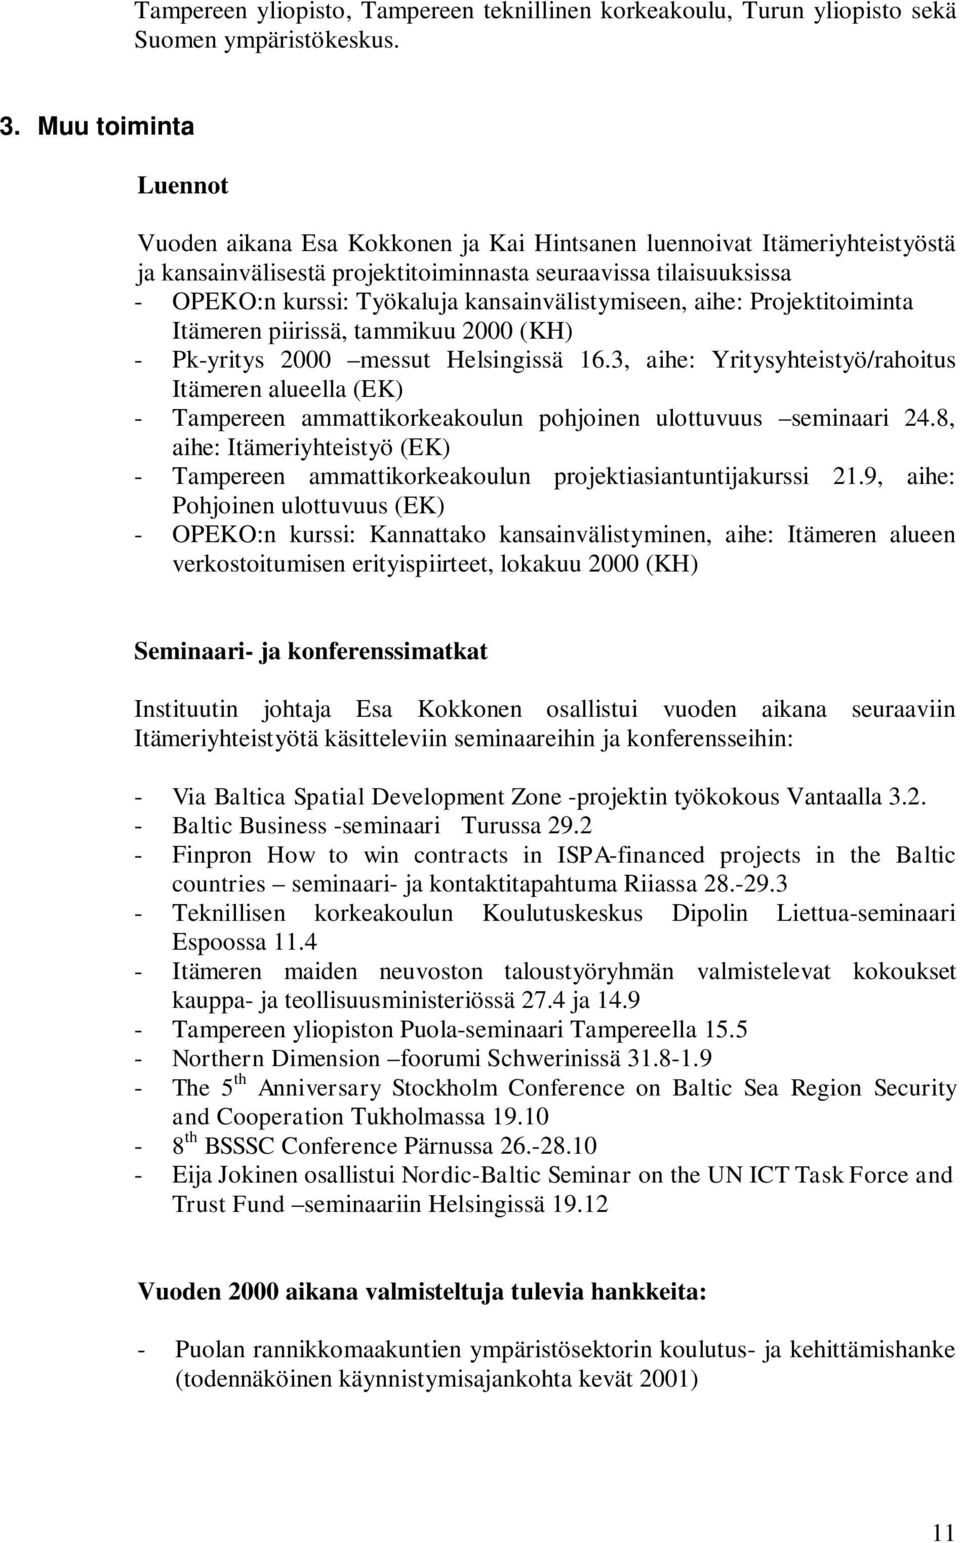 kansainvälistymiseen, aihe: Projektitoiminta Itämeren piirissä, tammikuu 2000 (KH) - Pk-yritys 2000 messut Helsingissä 16.